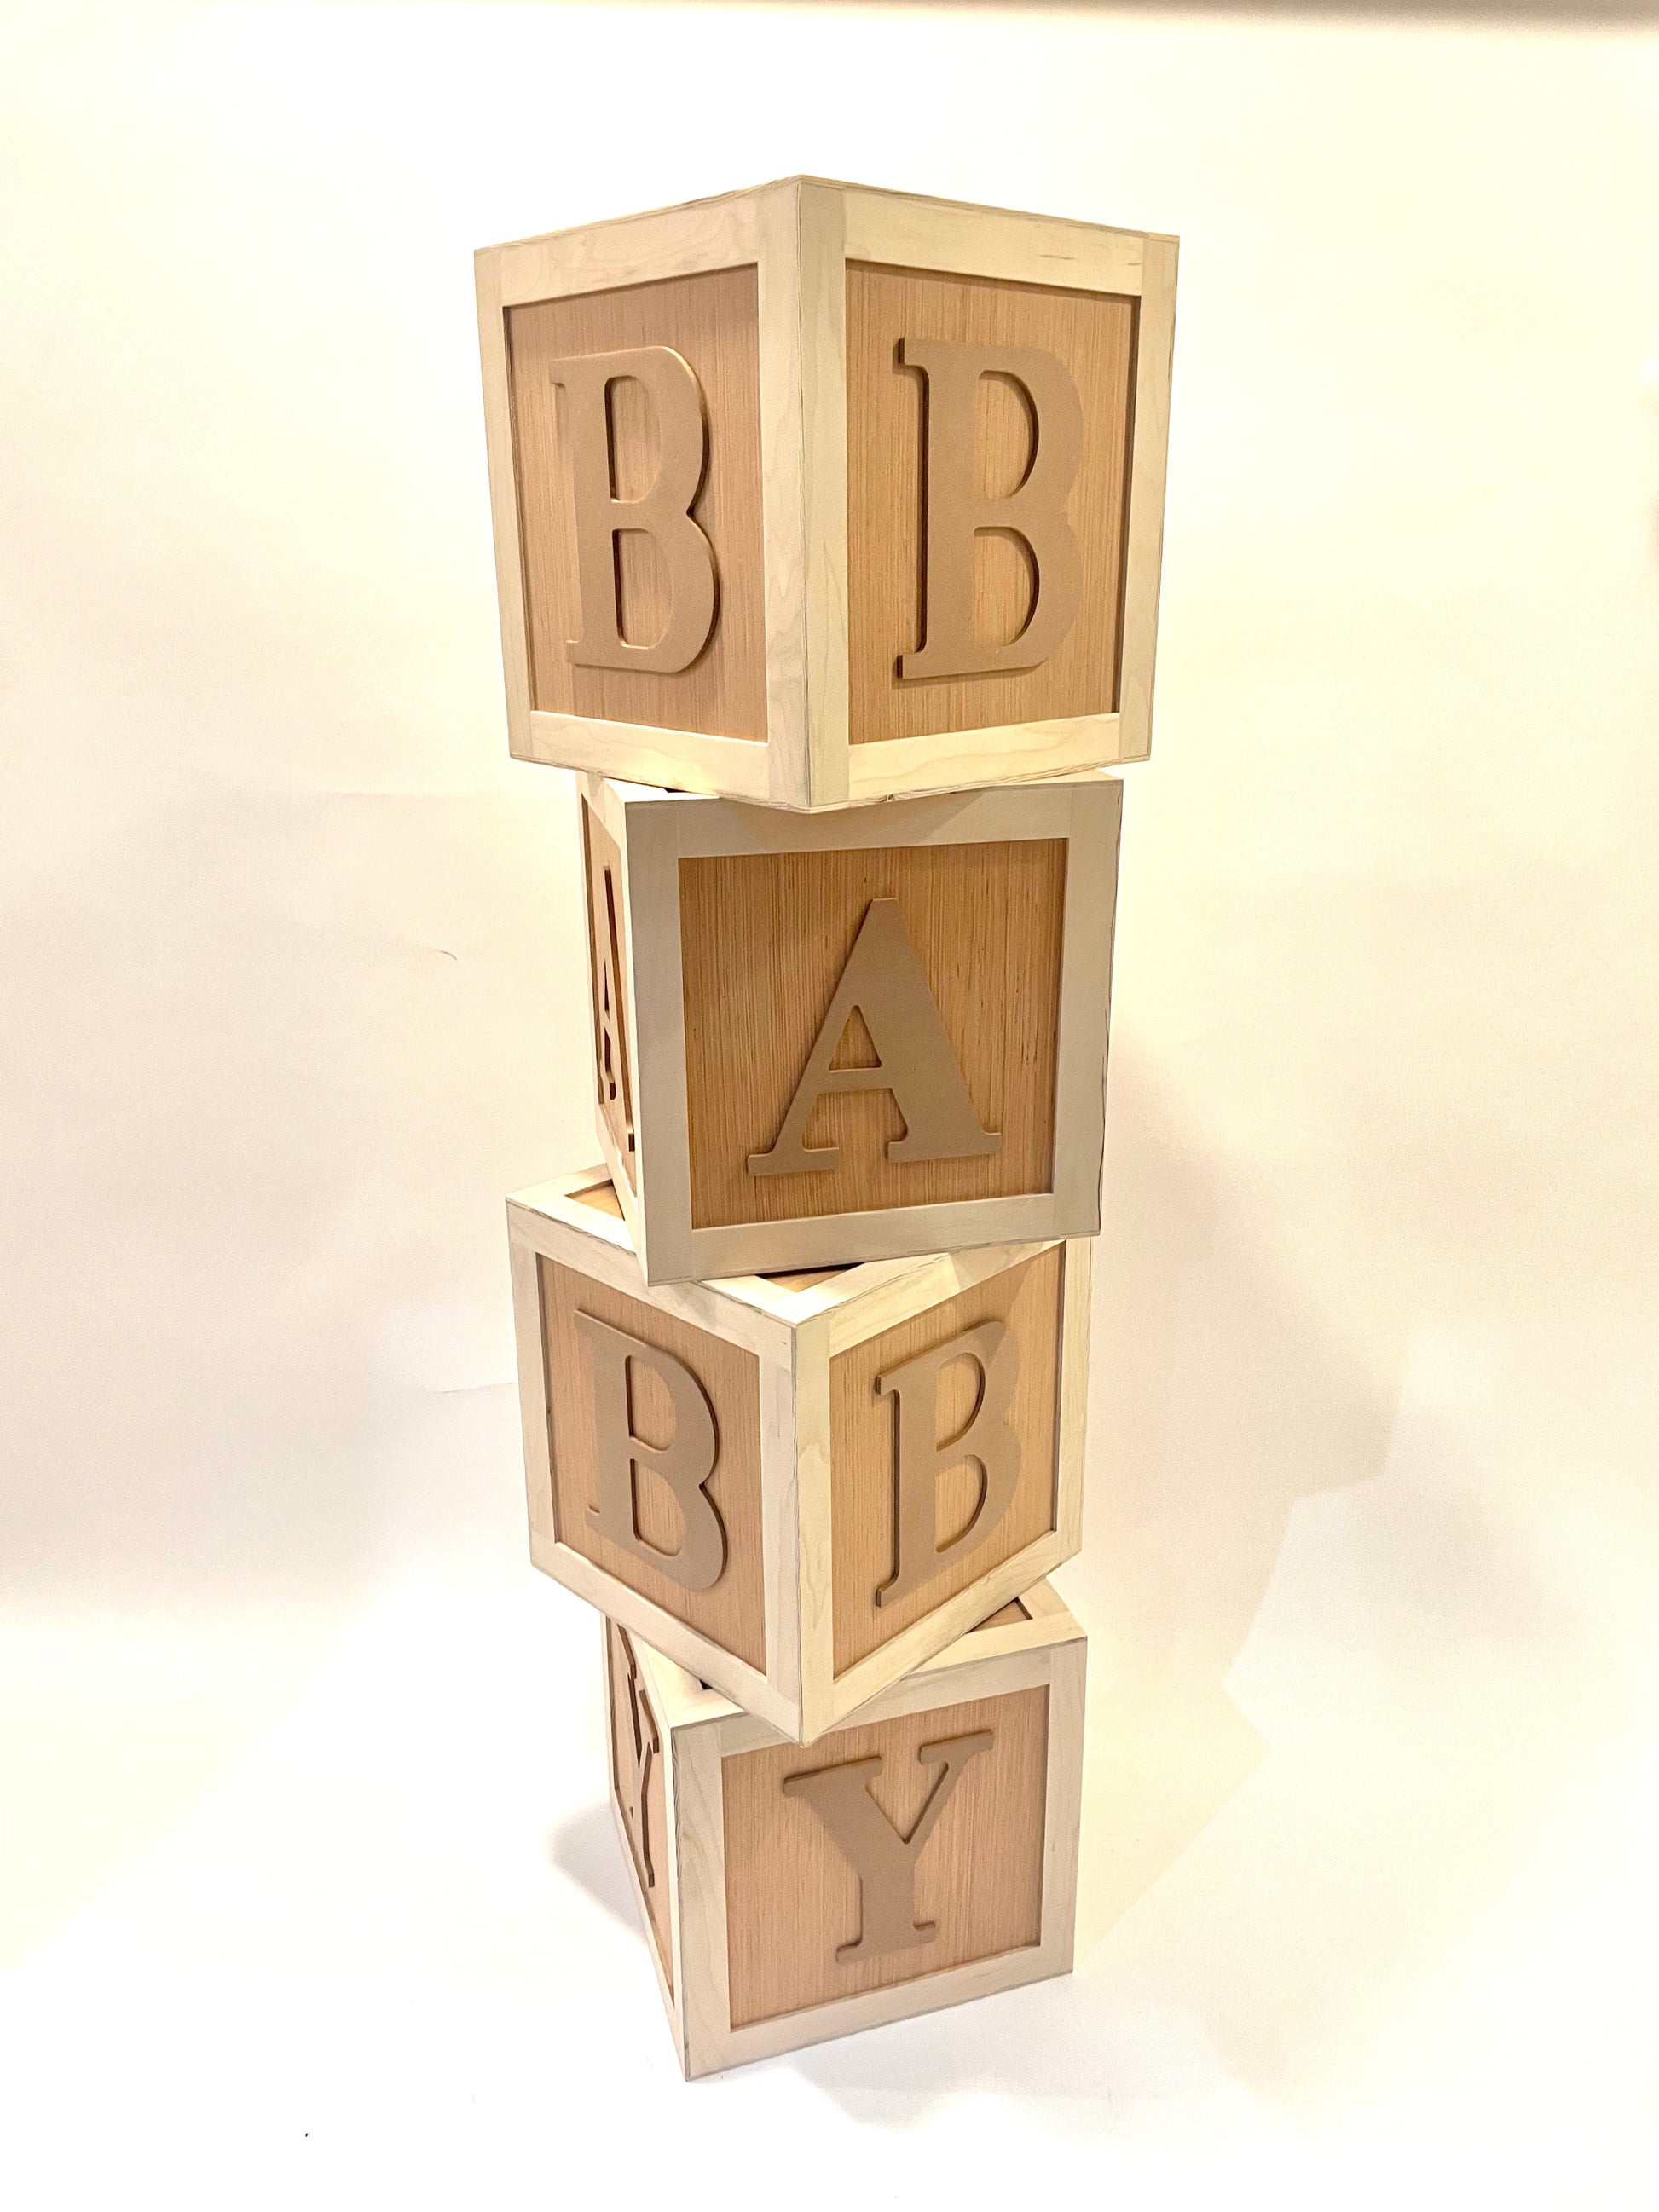 BABY Wooden Block Letters – Partiedup